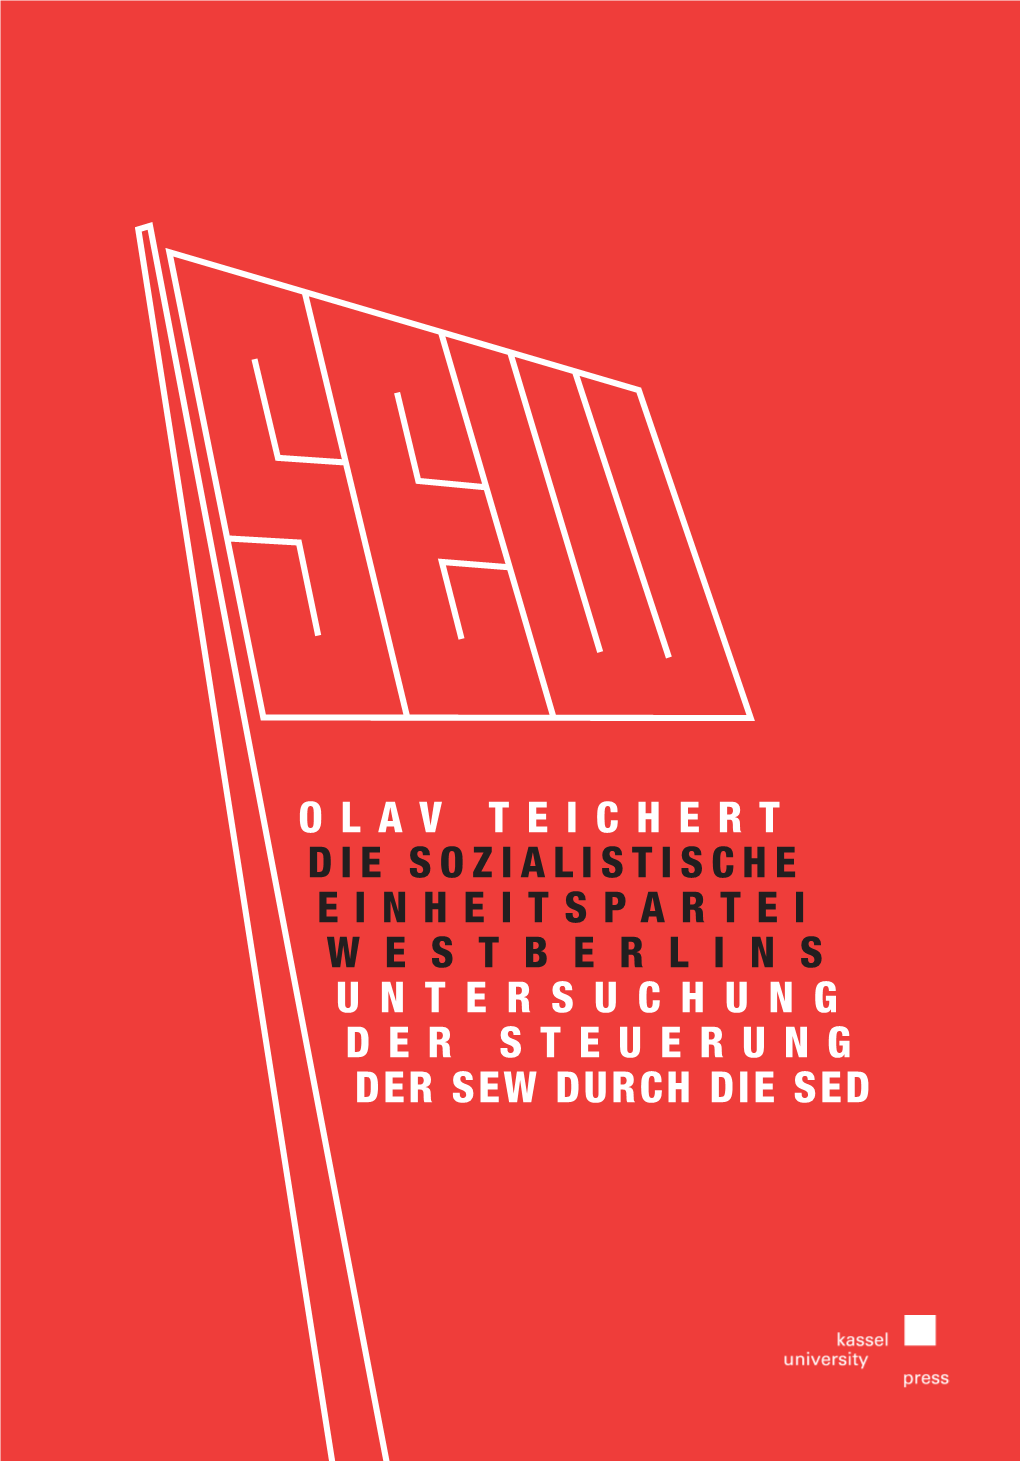 Die Sozialistische Einheitspartei Westberlins (SEW)